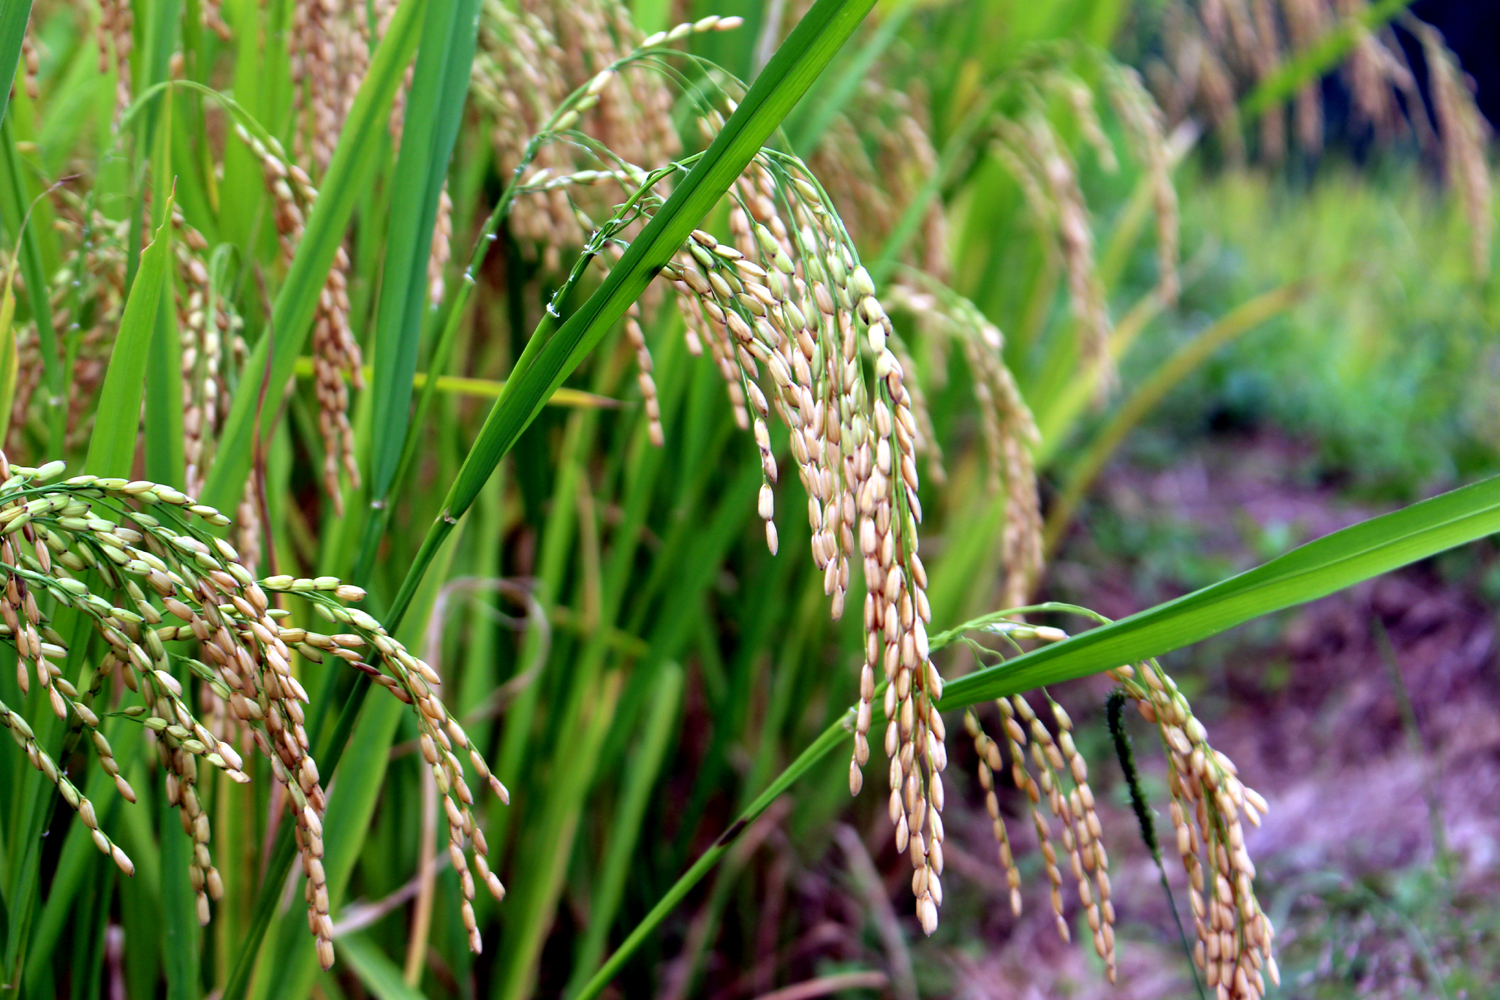 Người dân cần cù, chịu khó cộng với đất đai màu mỡ nên lúa năm nay đạt năng suất và chất lượng cao.